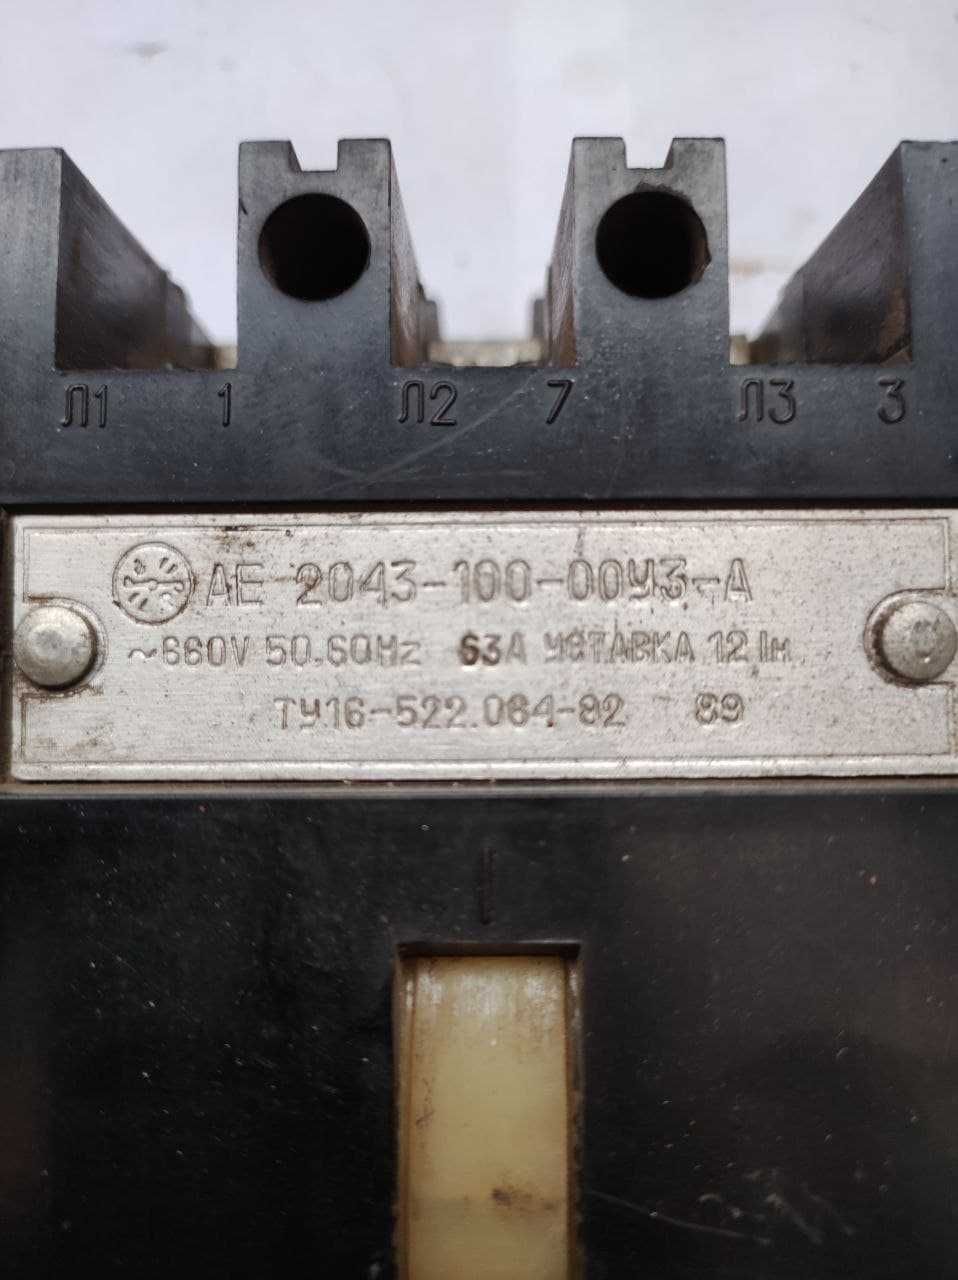 Автоматичний вимикач "А1 БДС 6059-84 100А" та "АЕ 2043-100-00У3"